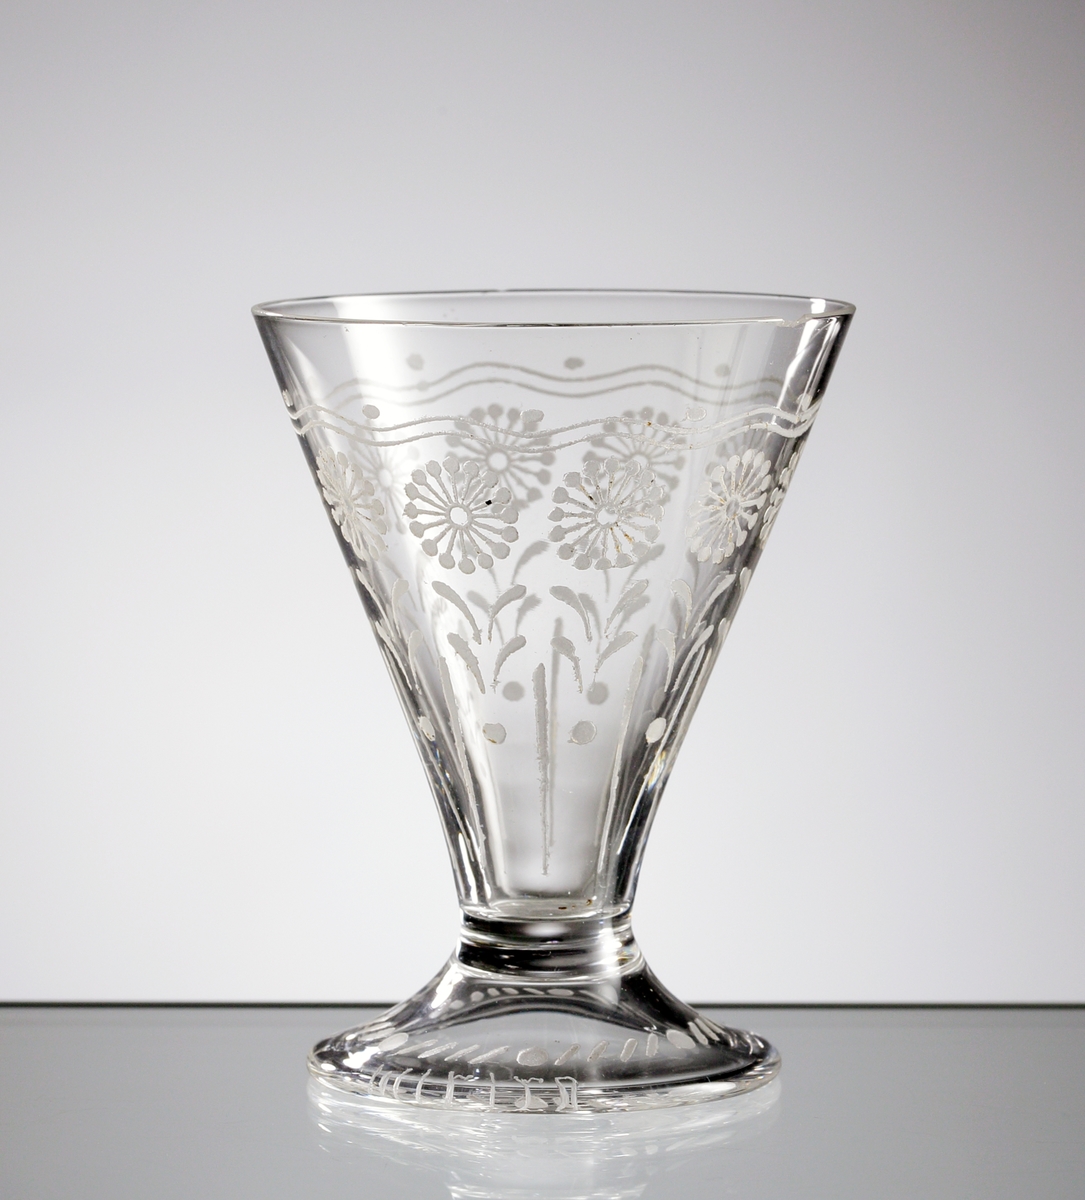 Starkvinsglas i ofärgat klarglas med dekor bestående av stiliserade blommor och blad.